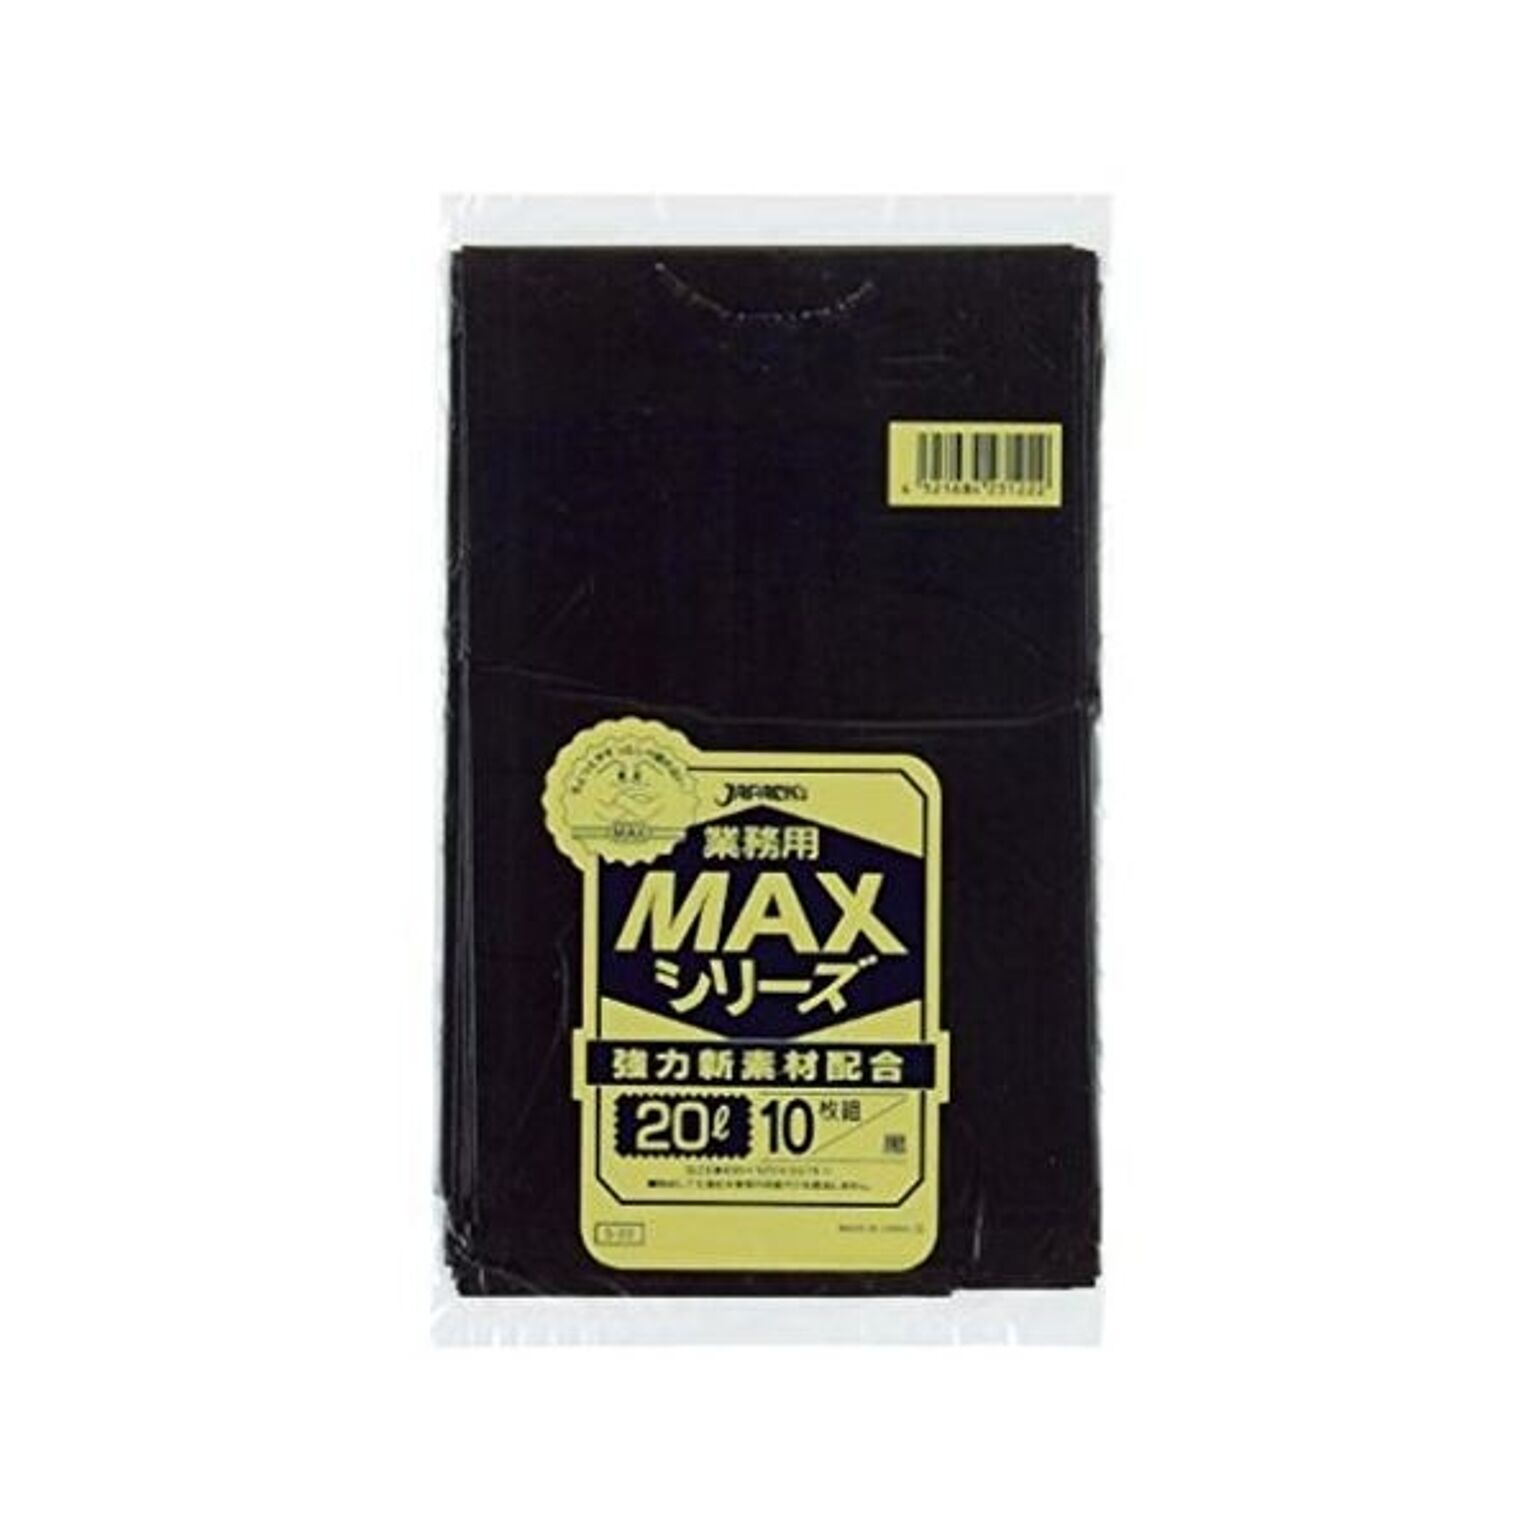 業務用MAX20L 10枚入015HD+LD黒 S22 （60袋×5ケース）合計300袋セット 38-323 通販 RoomClipショッピング